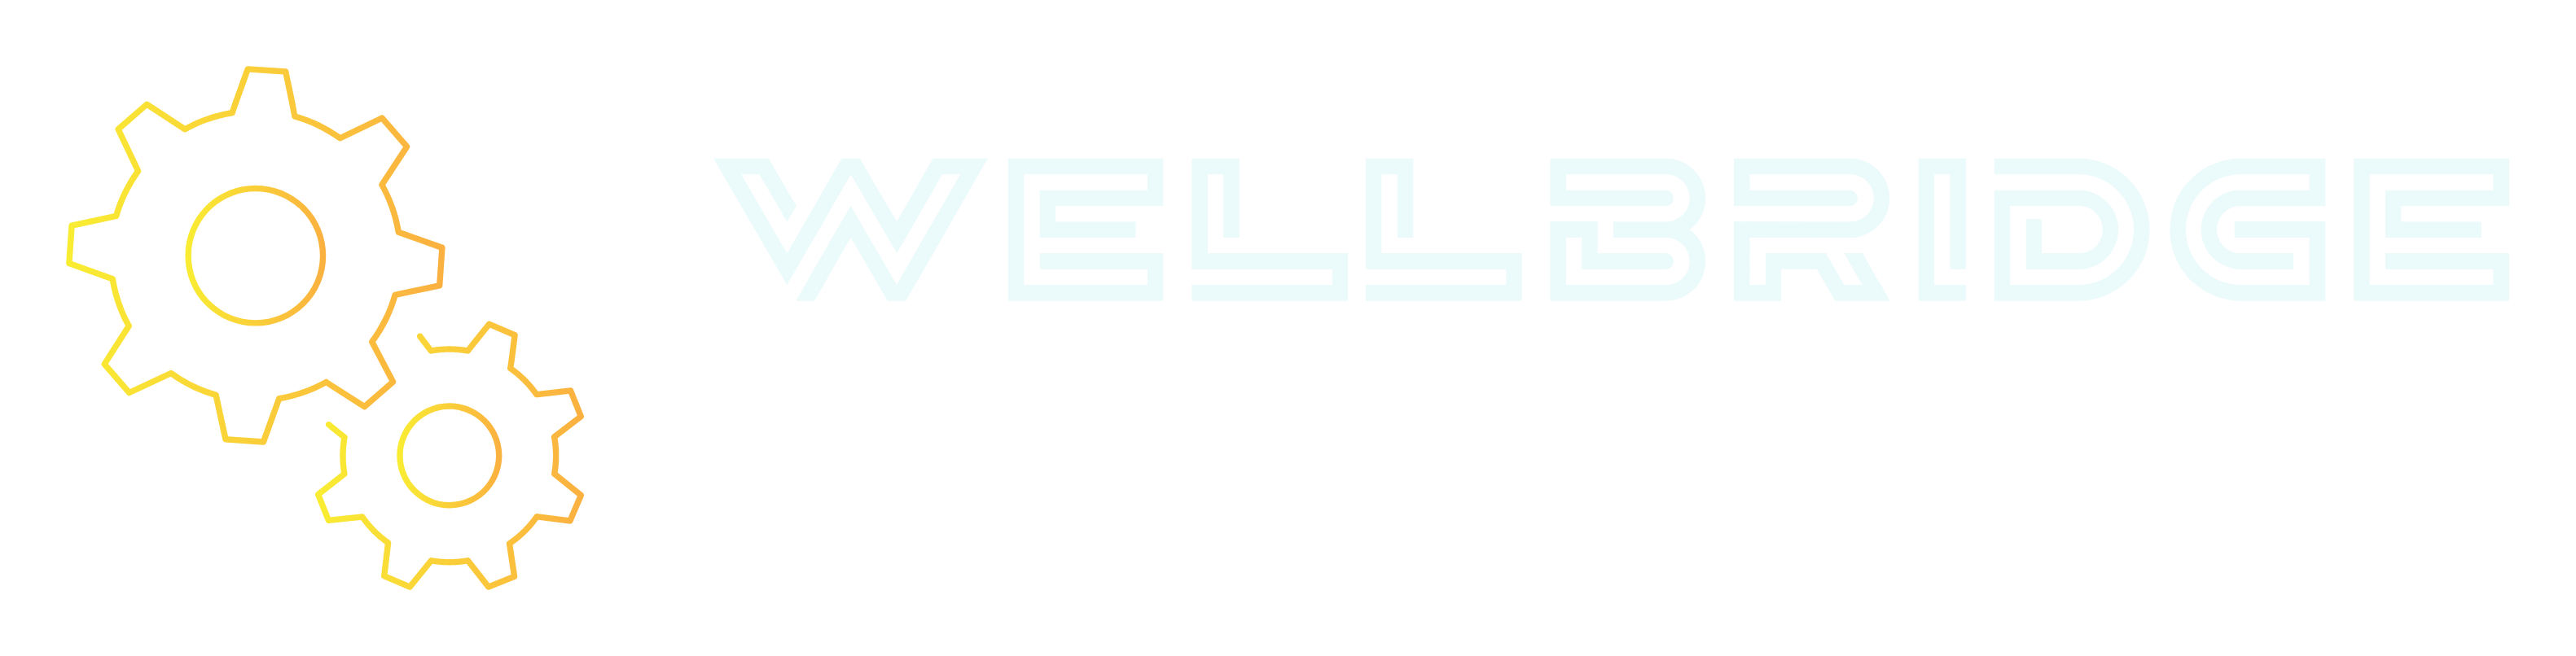 Wellbridge color logo